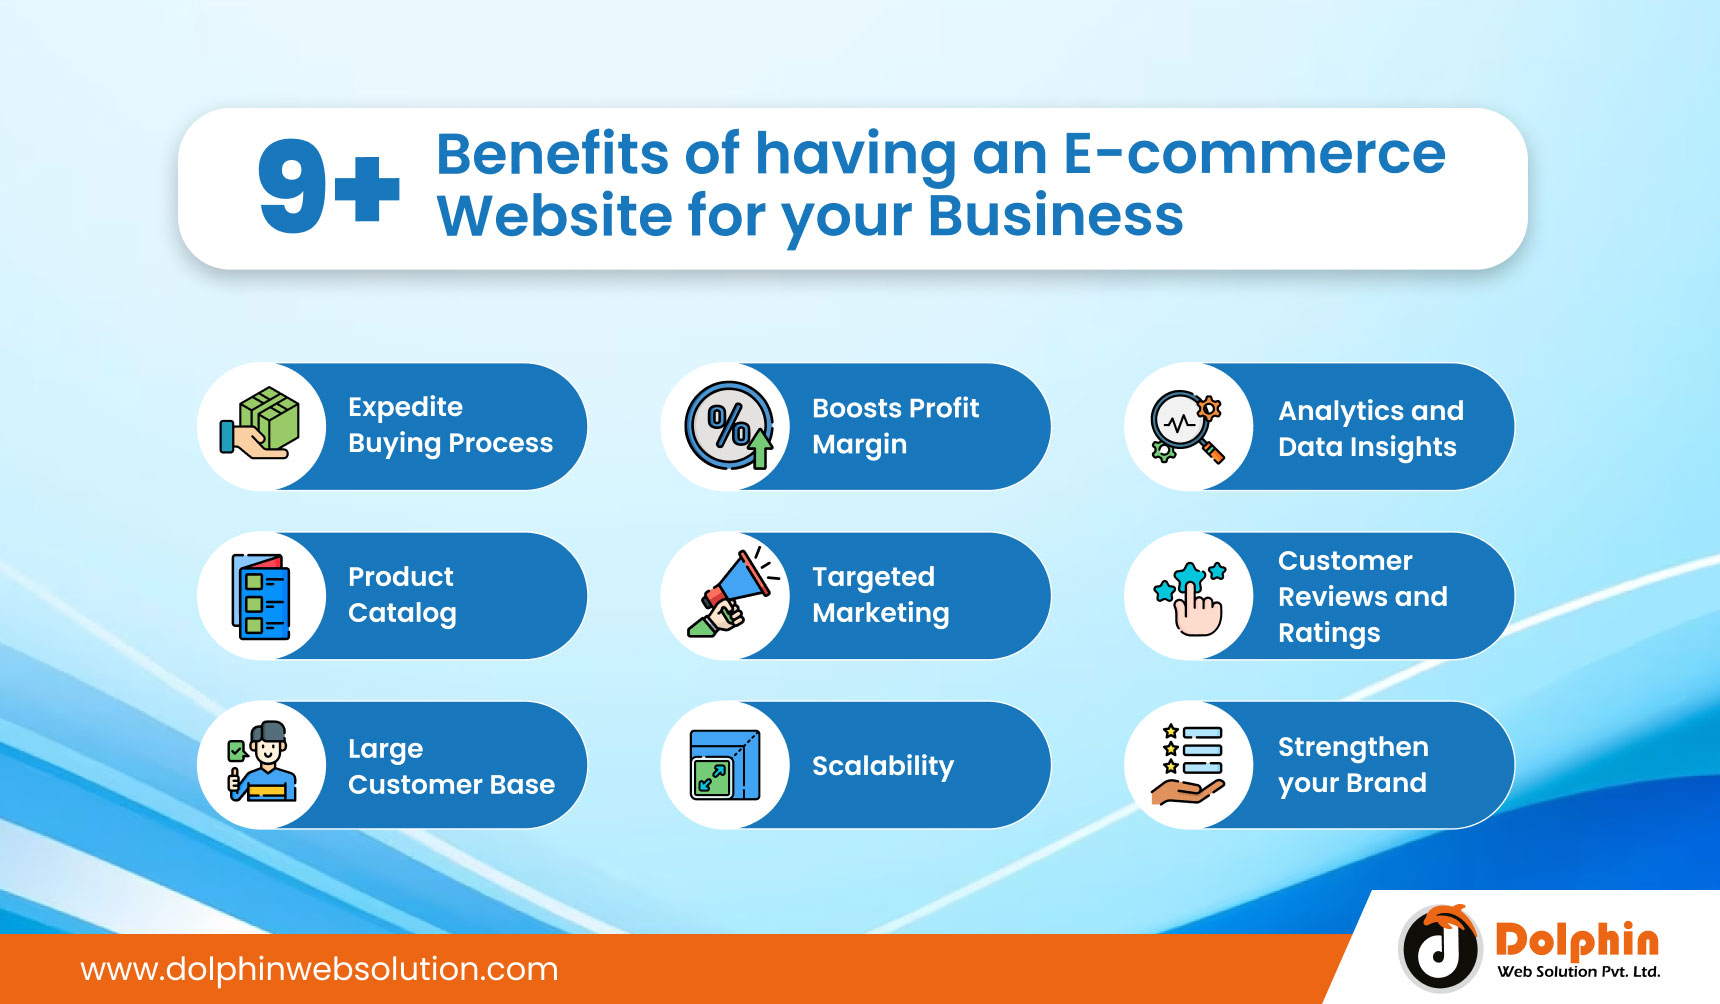 Benefits of ecommerce website